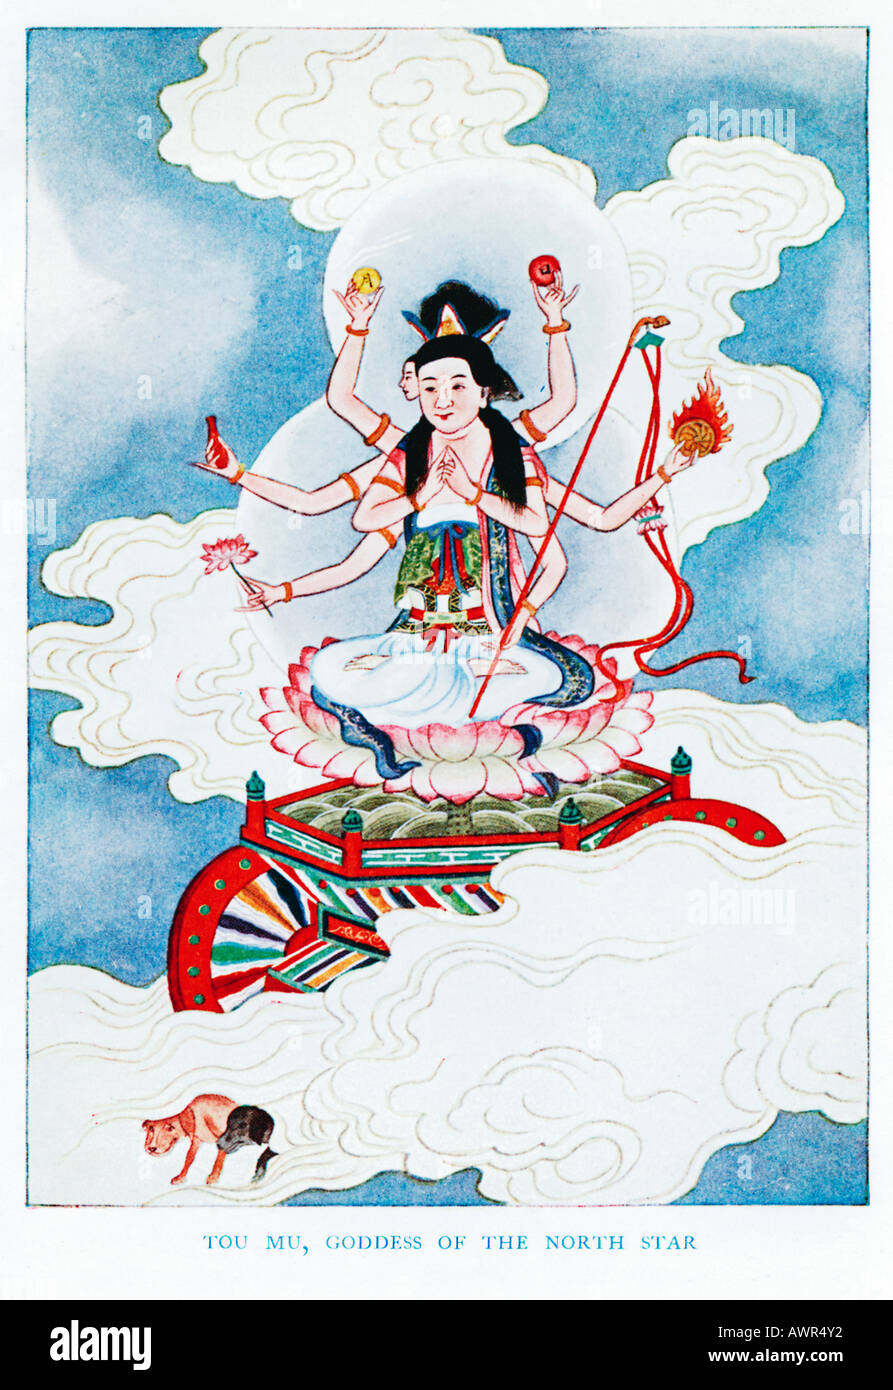 Tou-Mu-Göttin der North Star der 1920er Jahre Illustration eines chinesischen Künstlers aus einem Buch über Mythen und Legenden von China Stockfoto